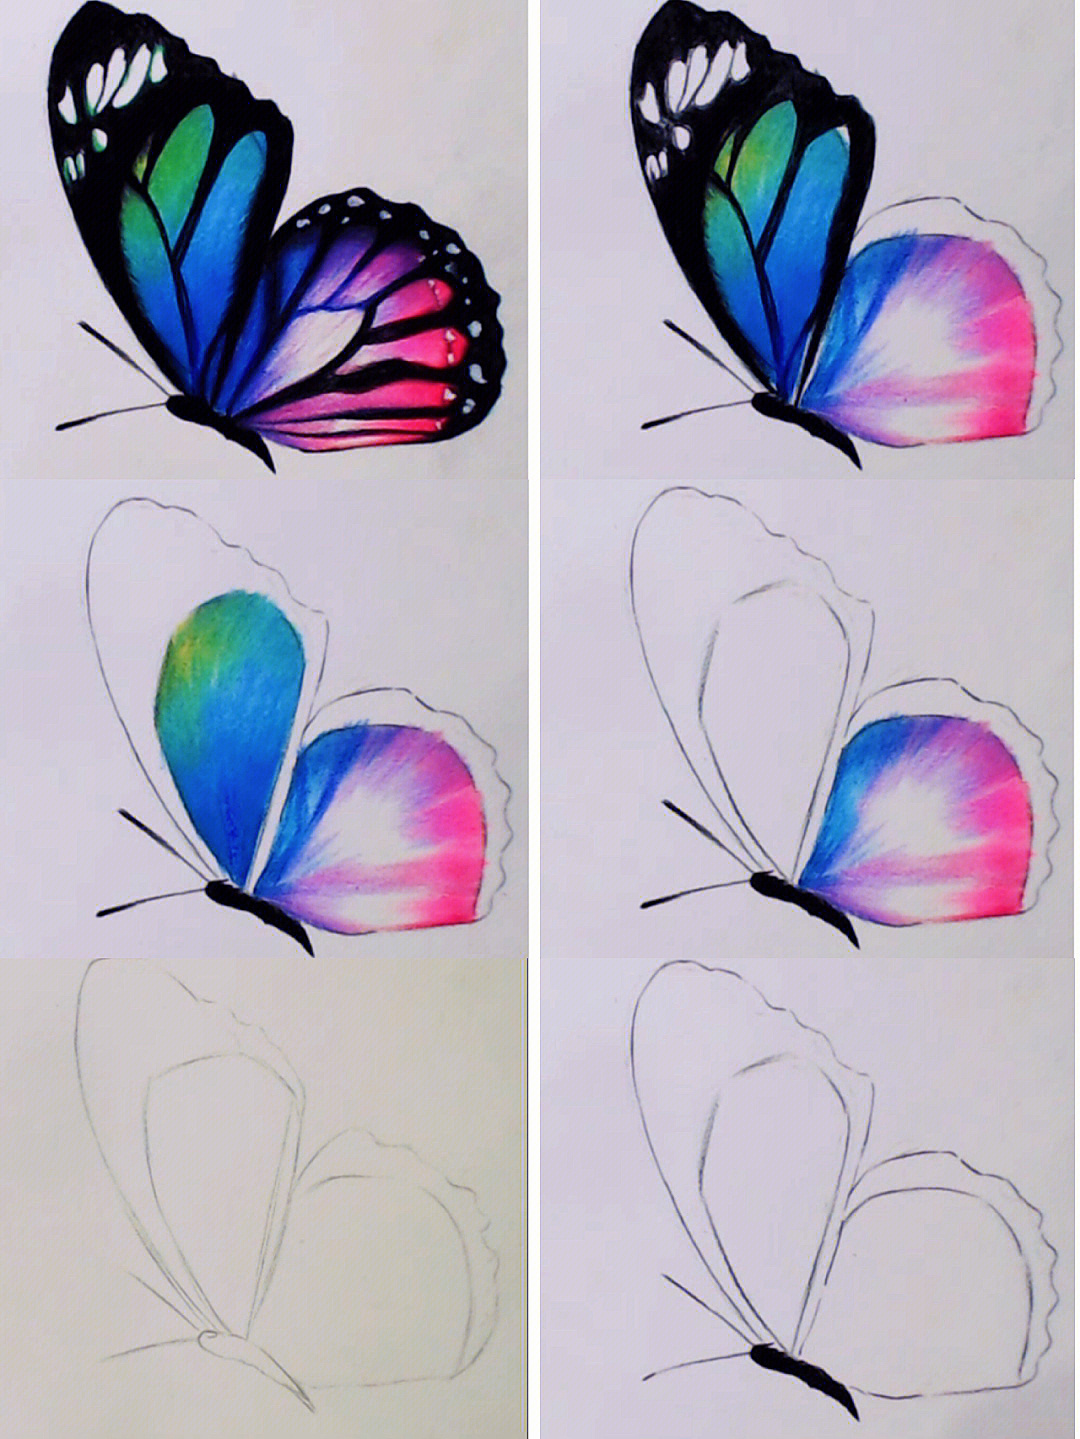 起形,用铅笔画好蝴蝶的外形,注意线稿要勾勒的干净清晰一点,线条不要